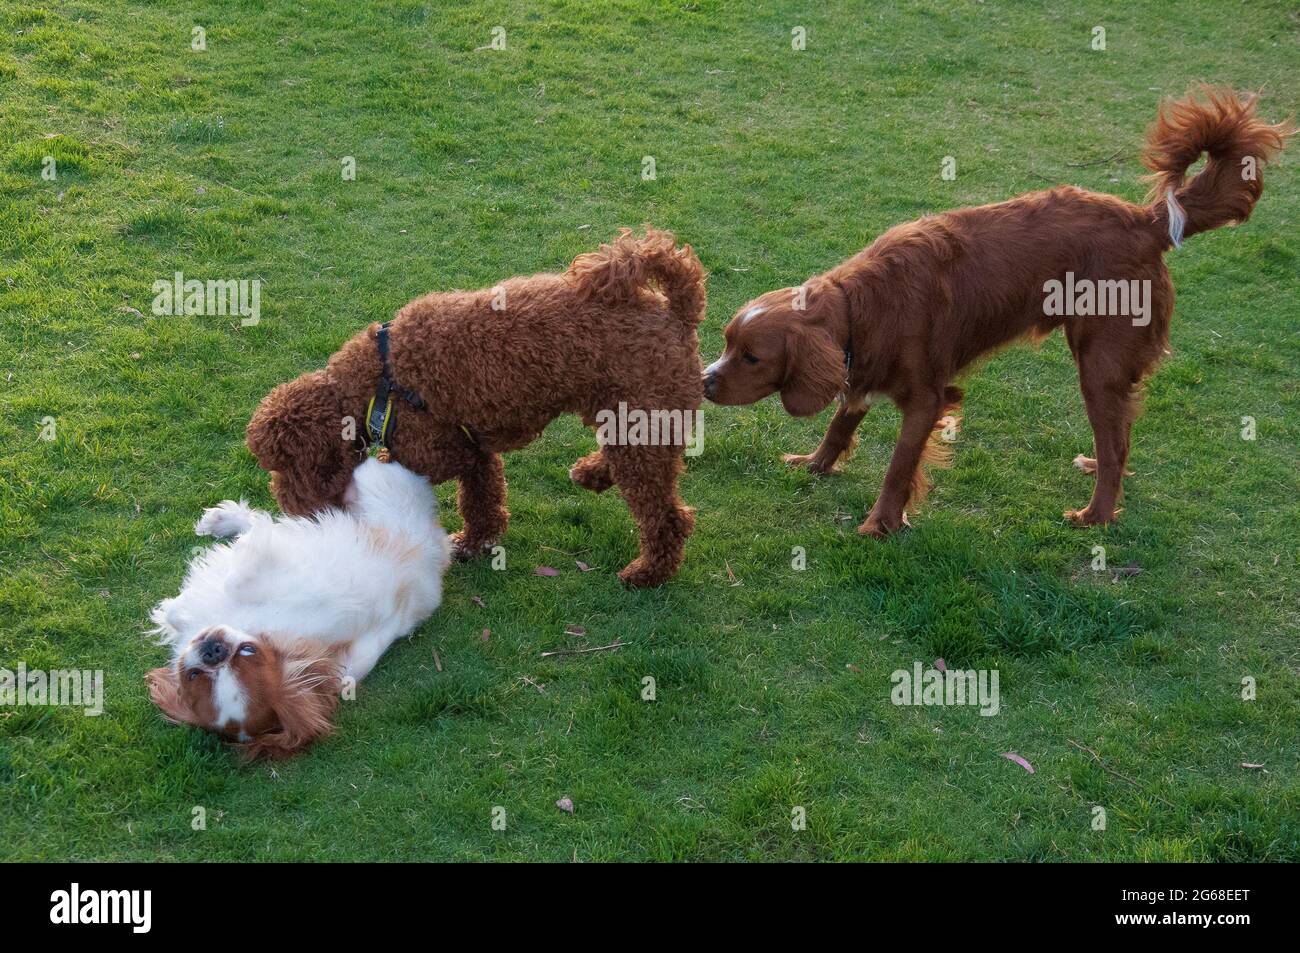 Drei Hunde verschiedener Rassen - King Charles Spaniel, Labradoodle und Nova Scotia Duck Tolling Retriever - treffen sich in einem öffentlichen Park Stockfoto